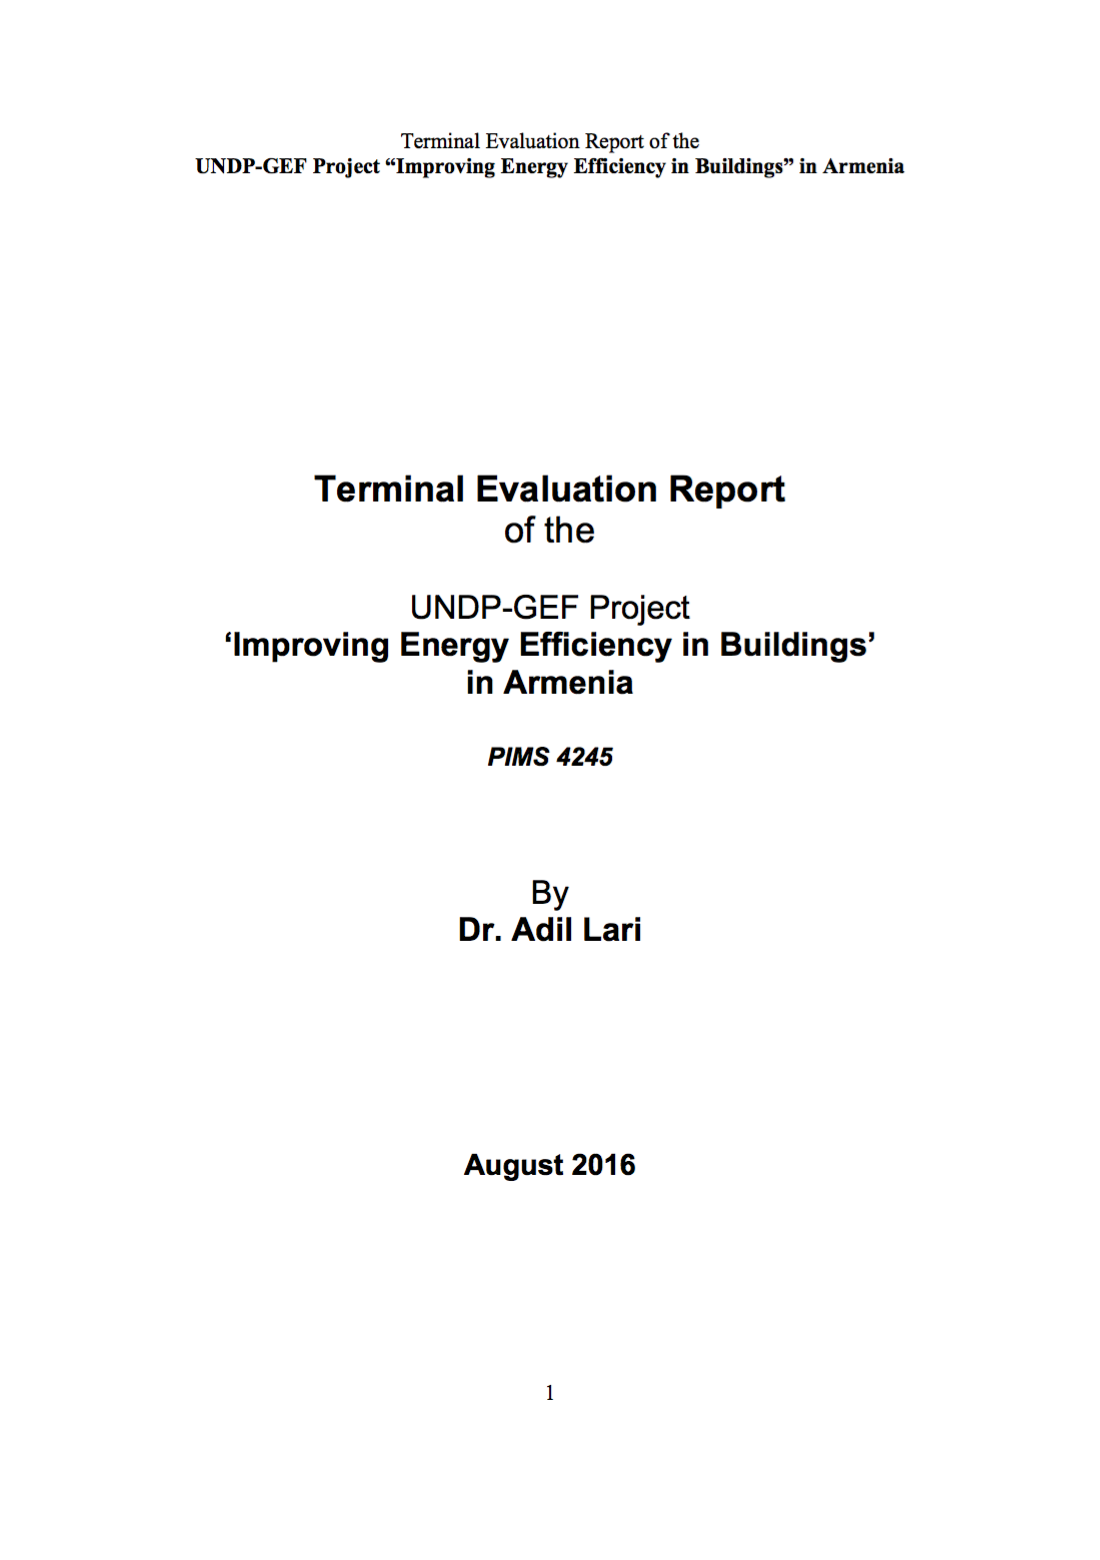 Improving Energy Efficiency in Buildings Final Evaluation